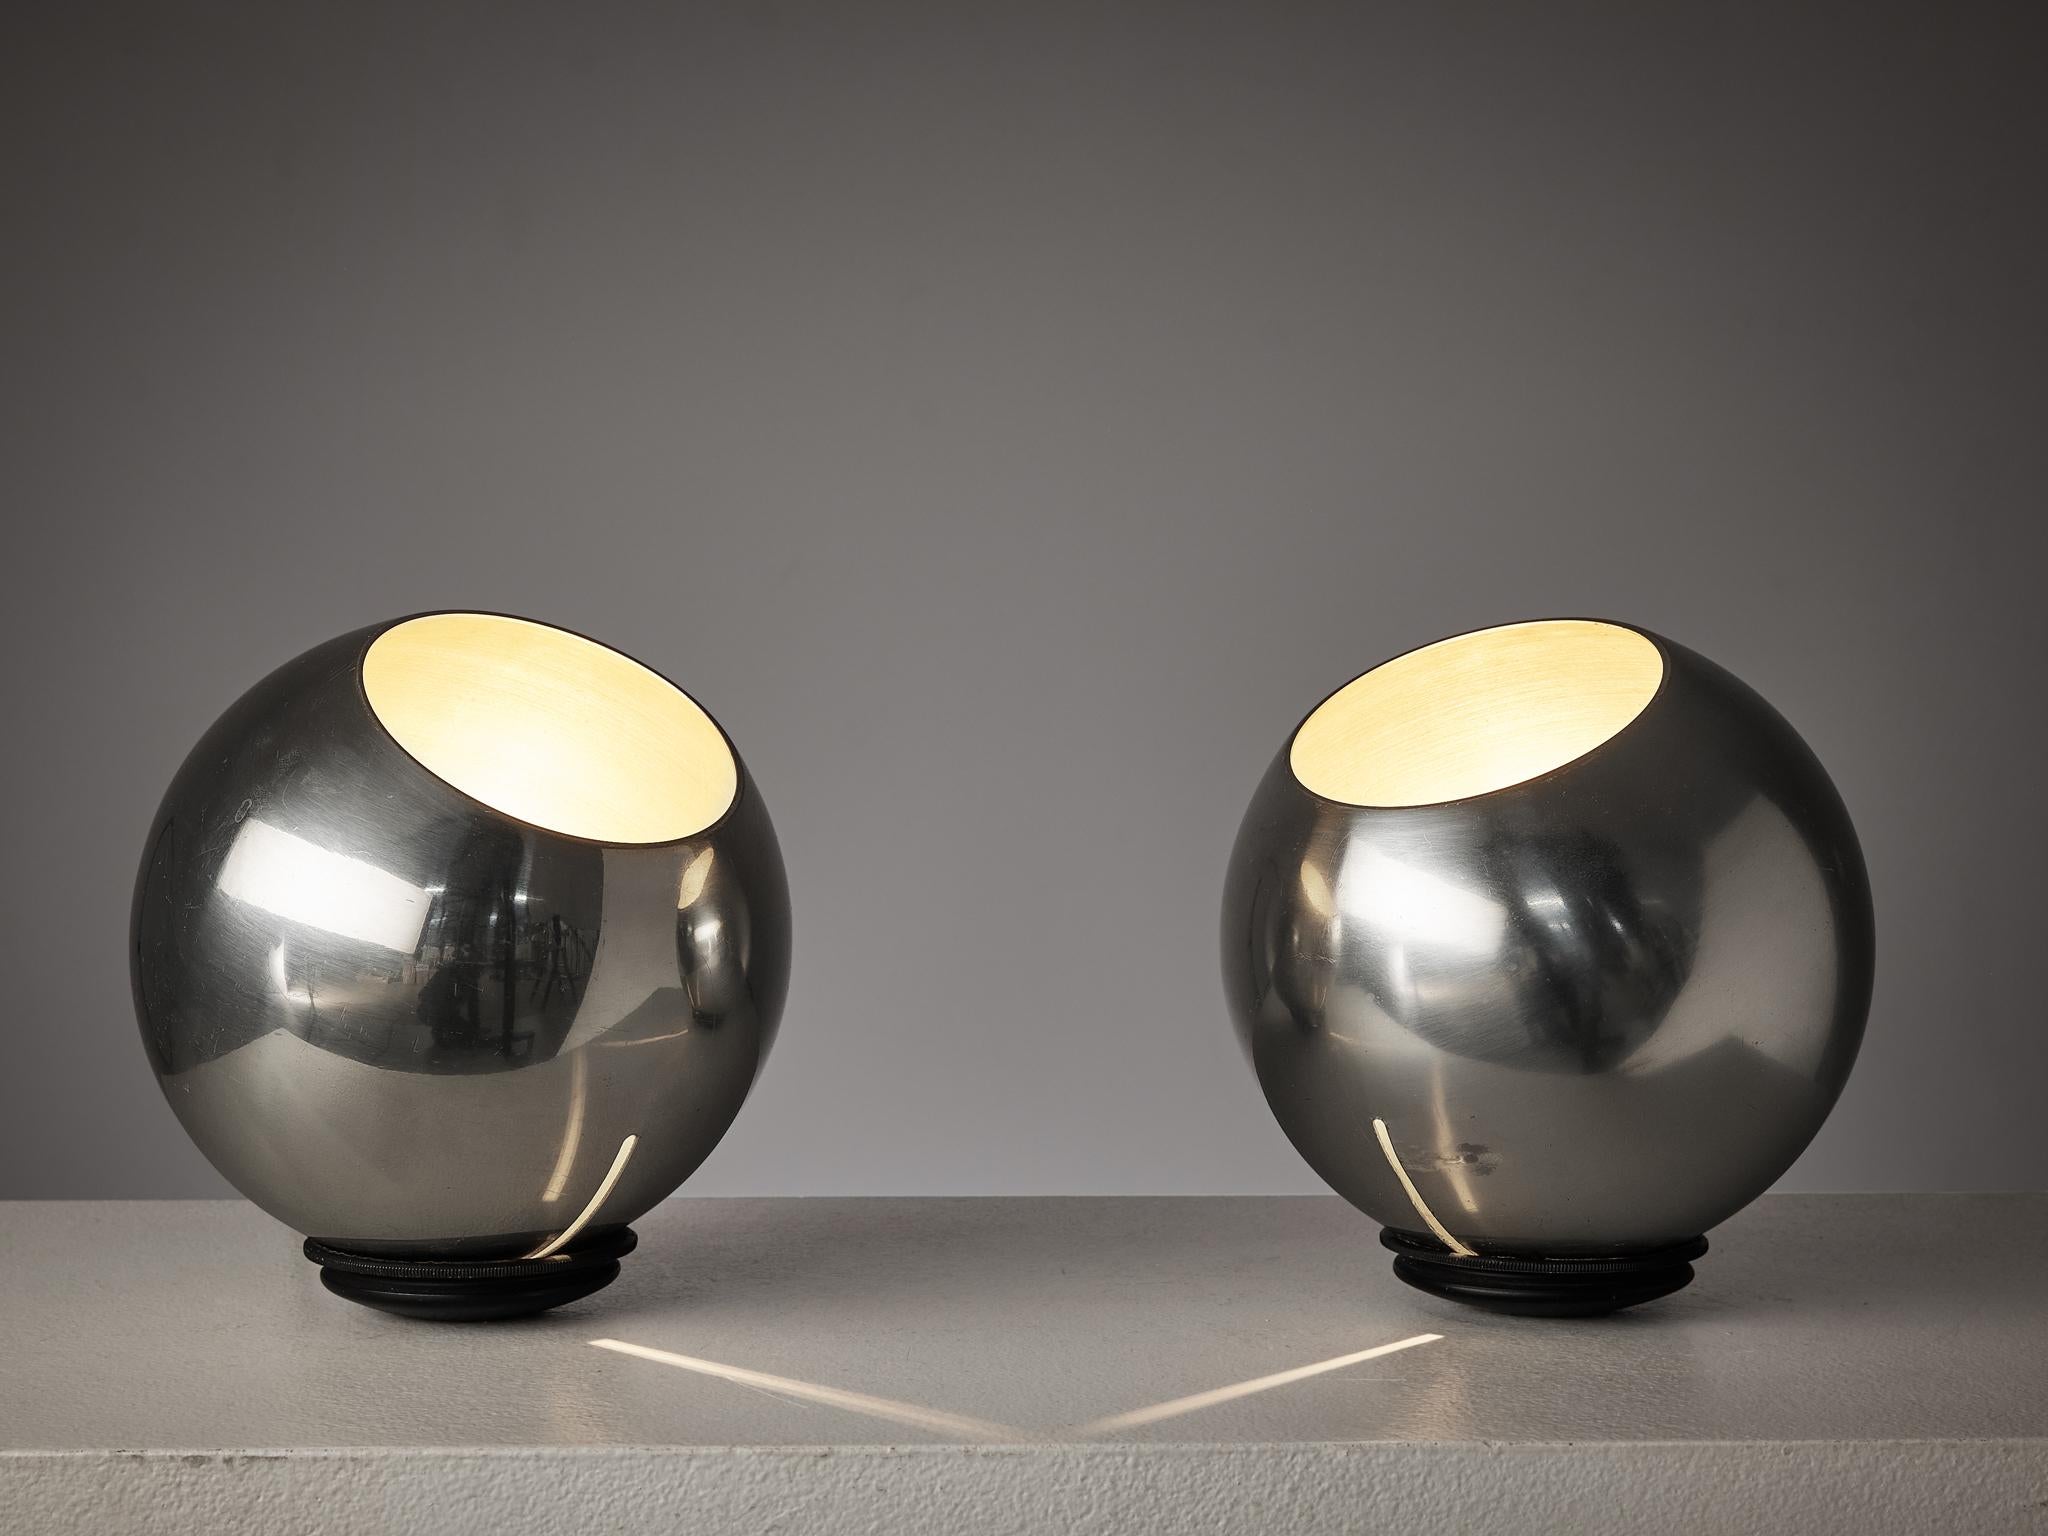 Gino Sarfatti für Arteluce, Paar Tisch- oder Stehlampen, Modell '586', Aluminium, Draht, Italien, 1962.

Ein Paar beeindruckende Aluminiumlampen, entworfen vom italienischen Designer Gino Sarfatti für Arteluce. Die runden Kugeln befinden sich auf